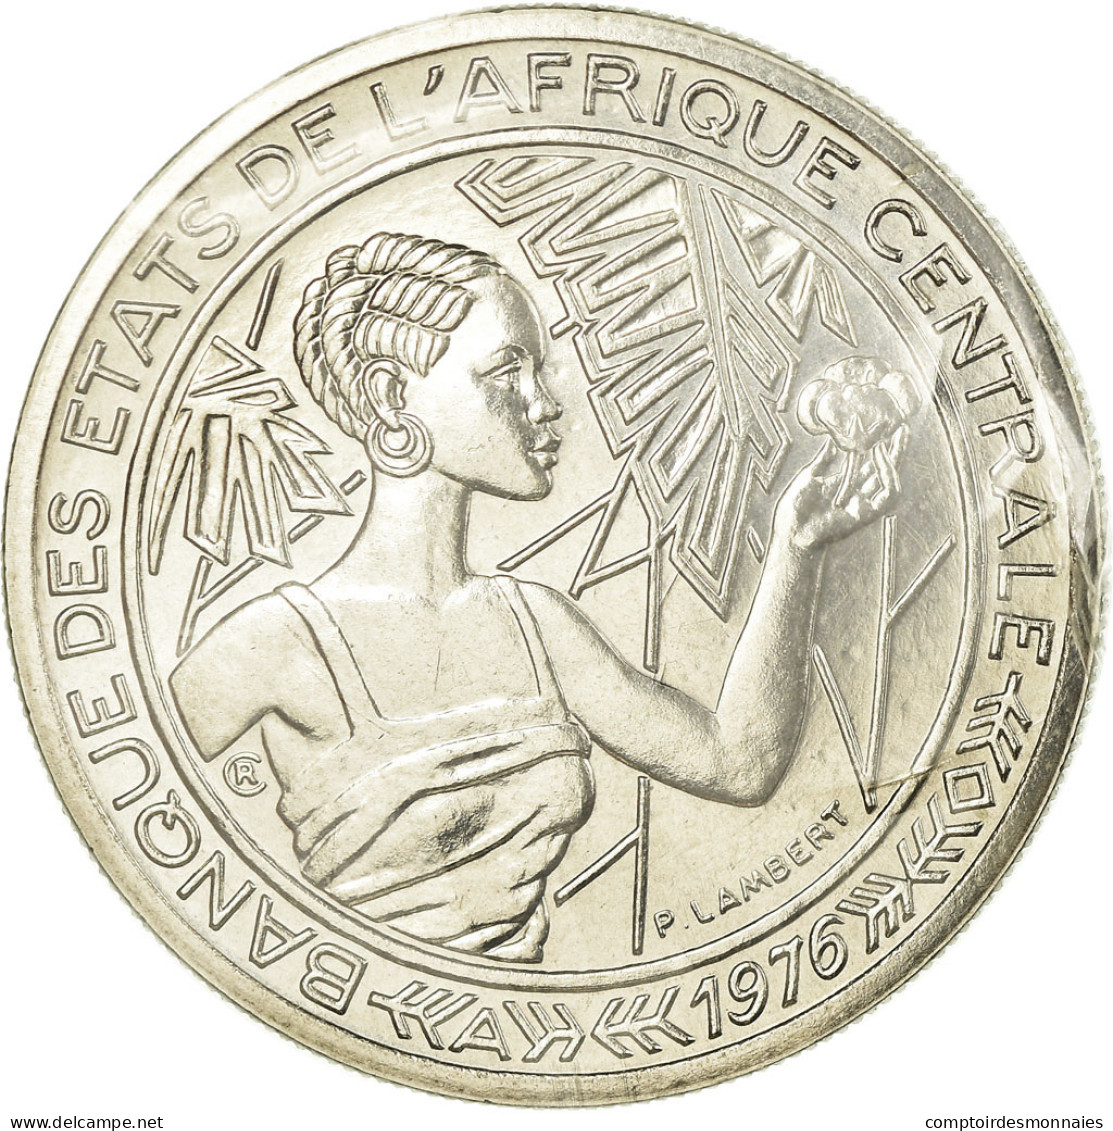 Monnaie, États De L'Afrique Centrale, 500 Francs, 1976, Paris, ESSAI, FDC - Gabon